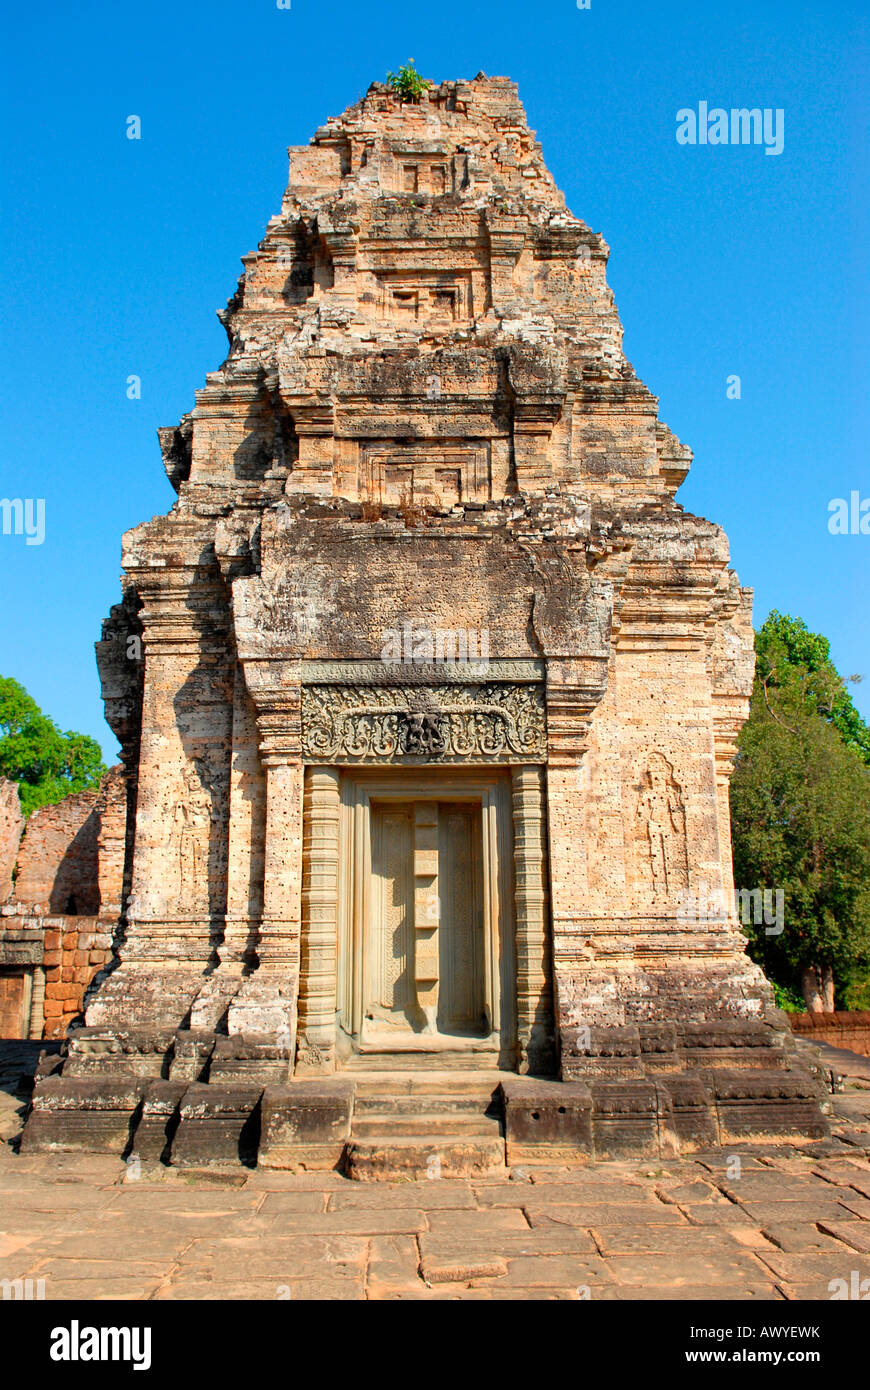 Kambodscha, Angkor Tempel Preah Khan, bleibt der reich verzierte steinerne Gebäude Gebäude Shiva geweiht Stockfoto